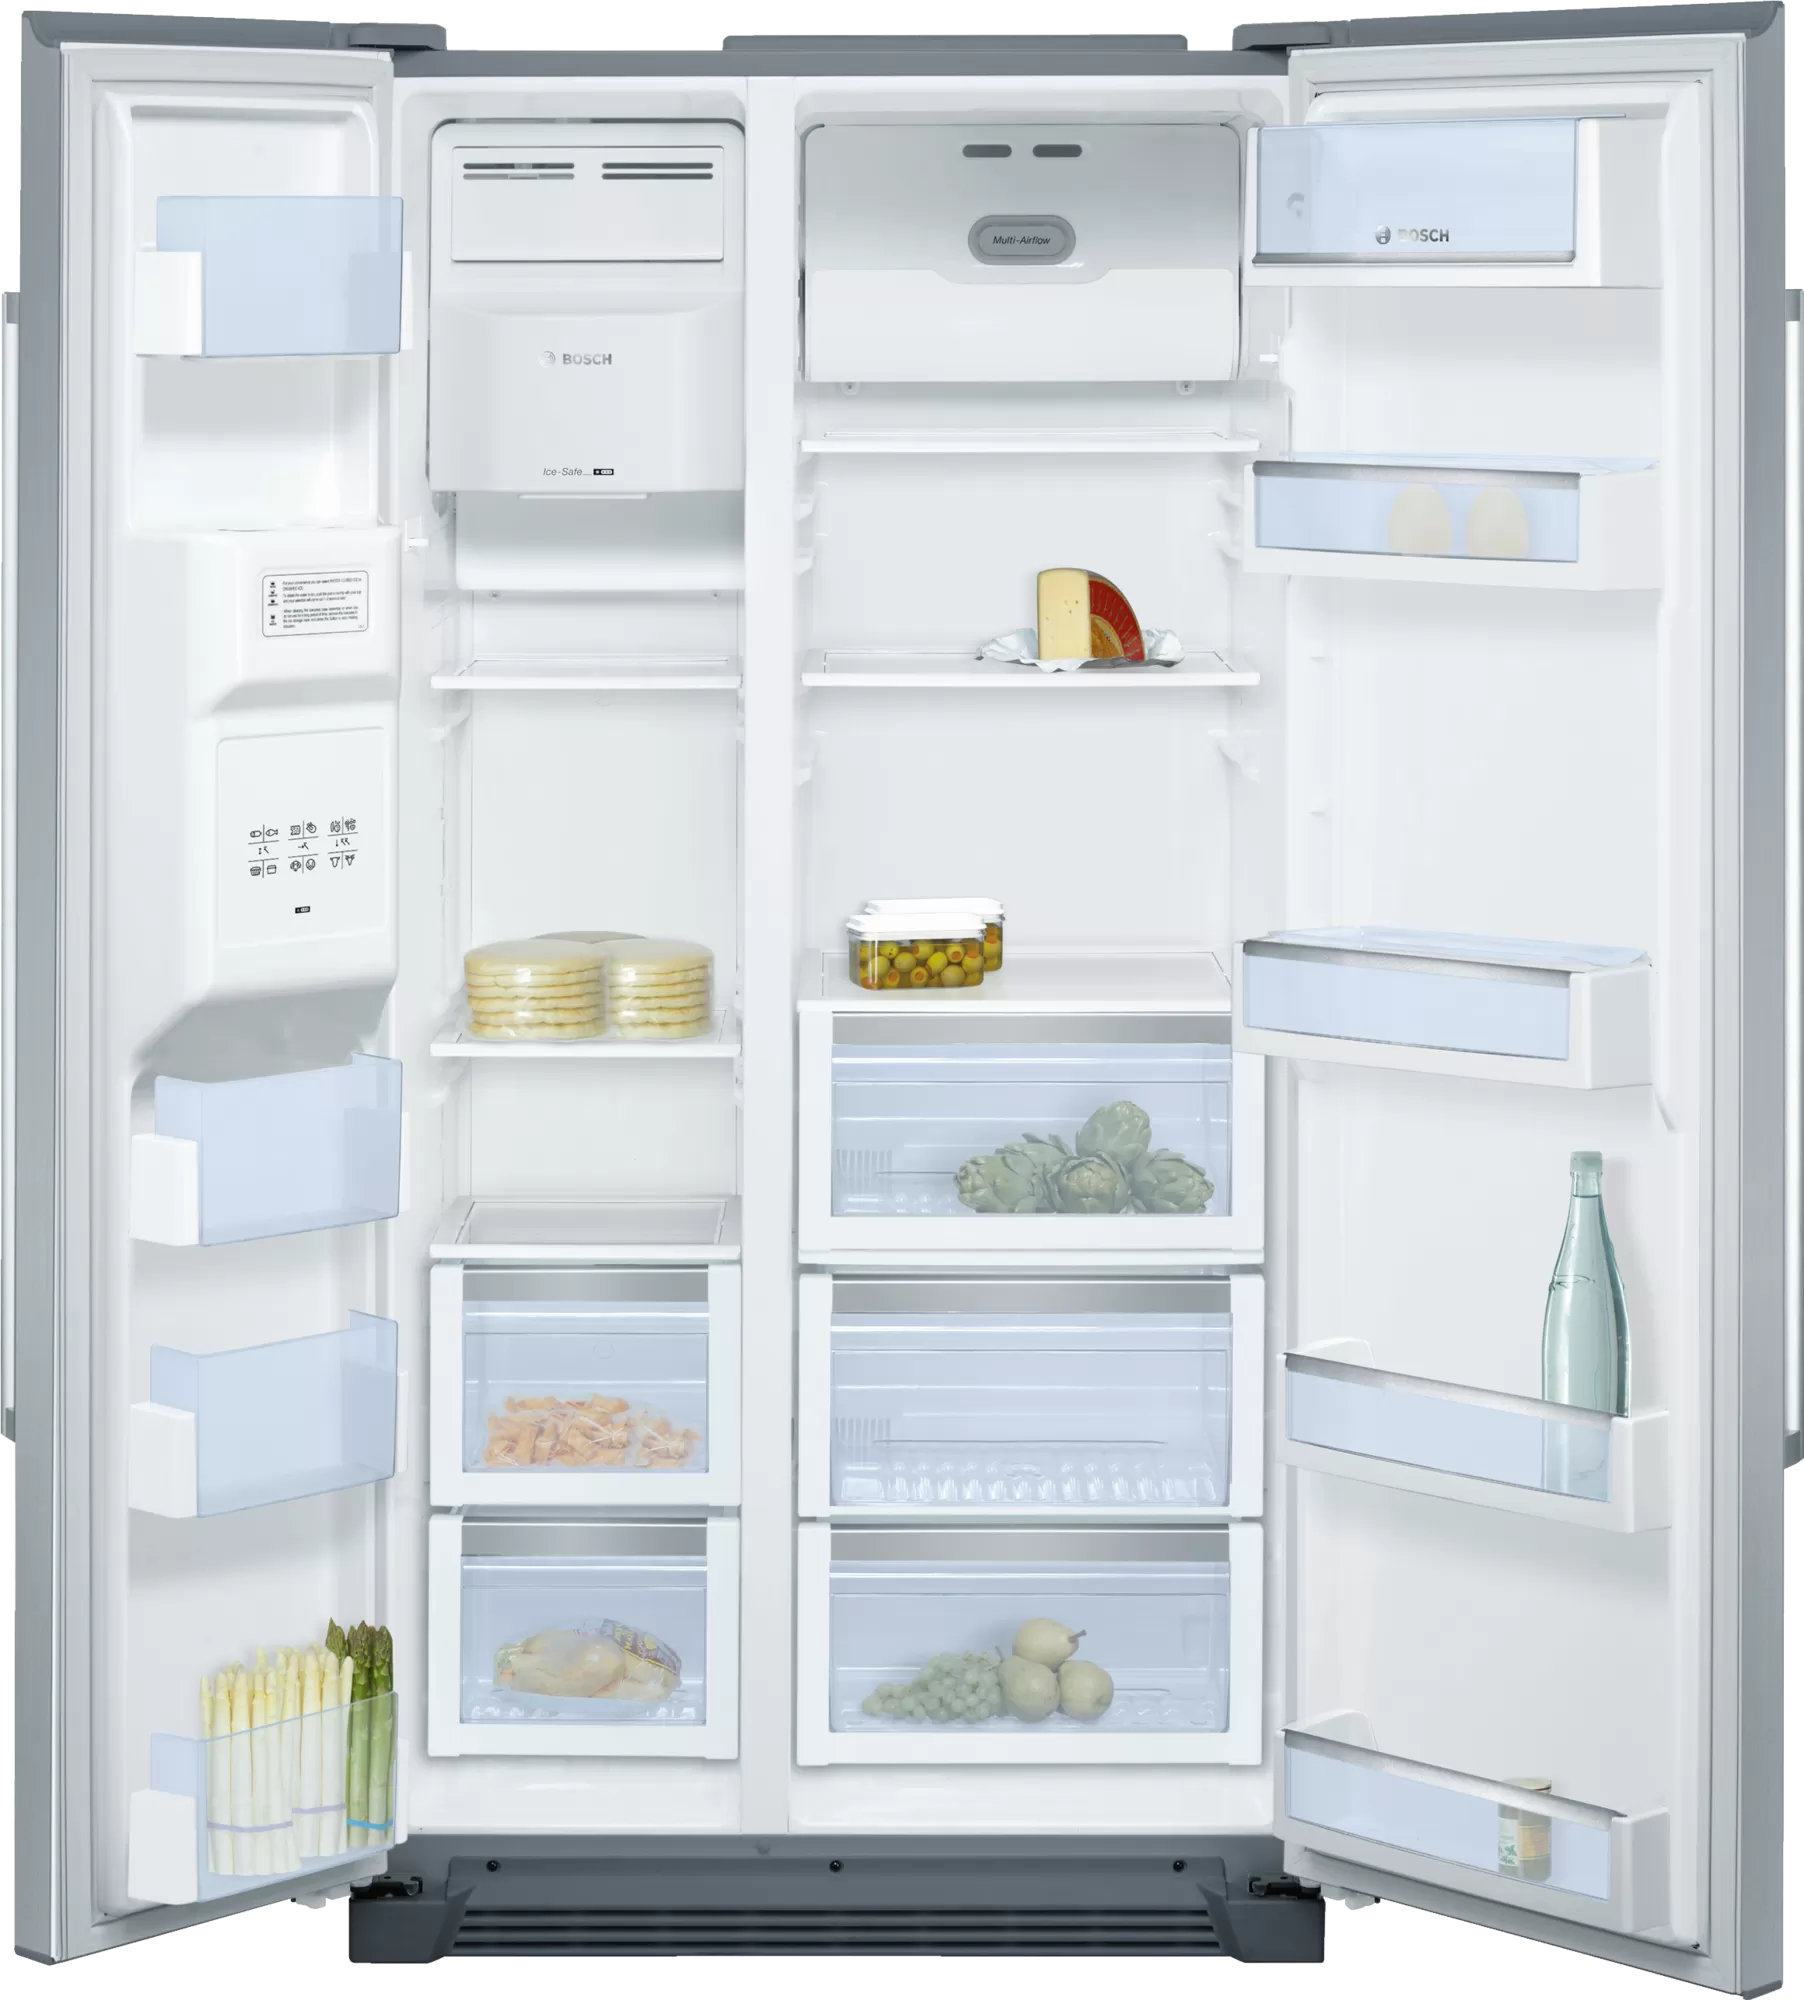 Tủ lạnh Bosch KAN58A75 được thiết kế với nhiều ngăn cho nhiều mục đích sử dụng khác nhau